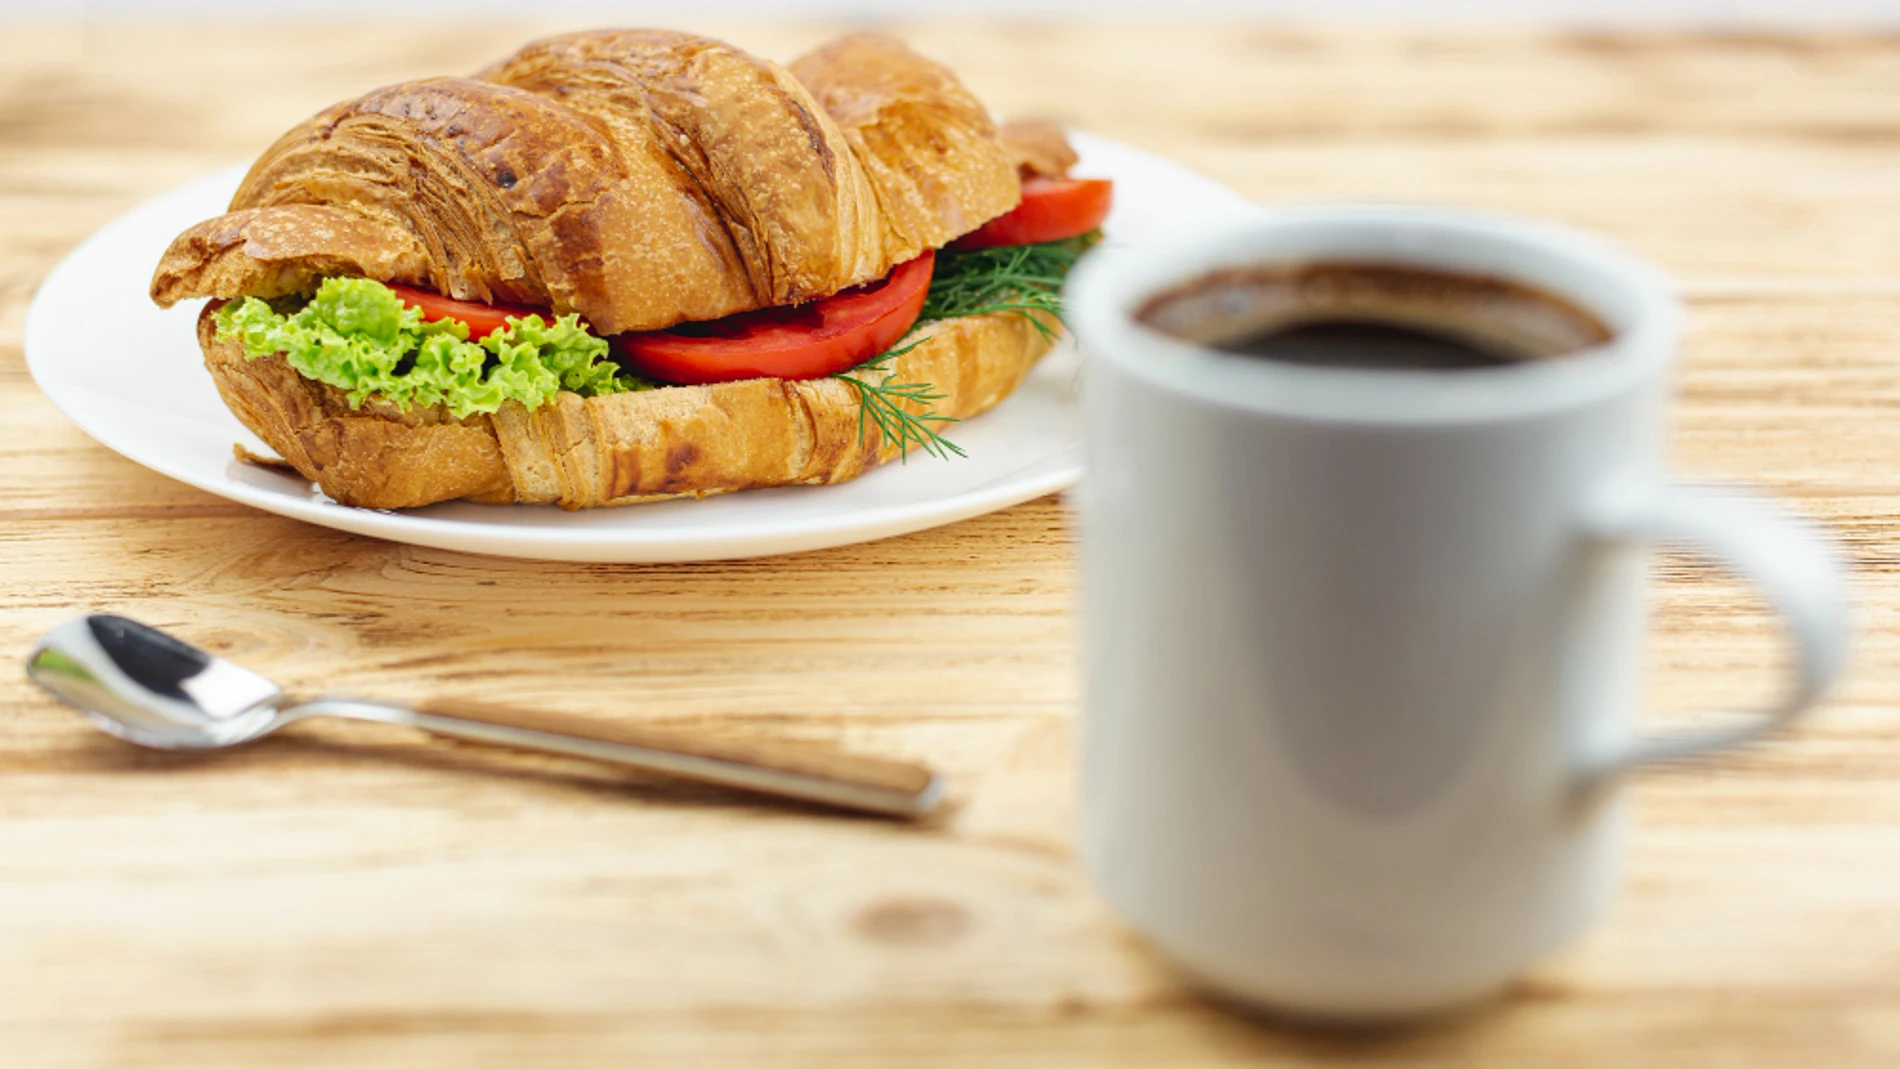 Cafe enfordar artrosis desayuno españa